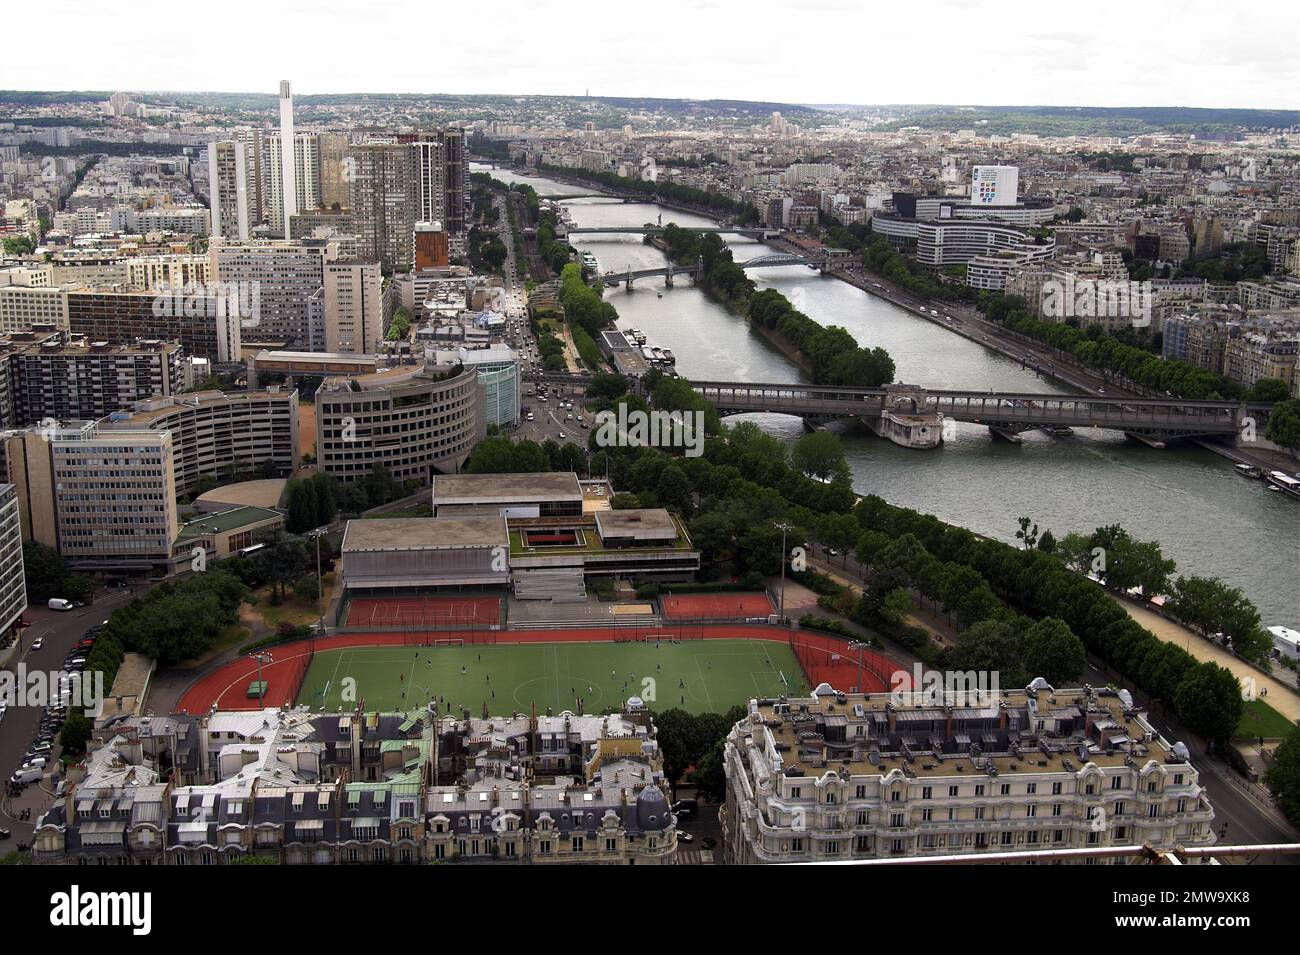 Paryż, Paris, Francja, France, Frankreich, View of the bridge over the Seine; Blick auf die Brücke über die Seine; mosty nad Sekwaną Stock Photo